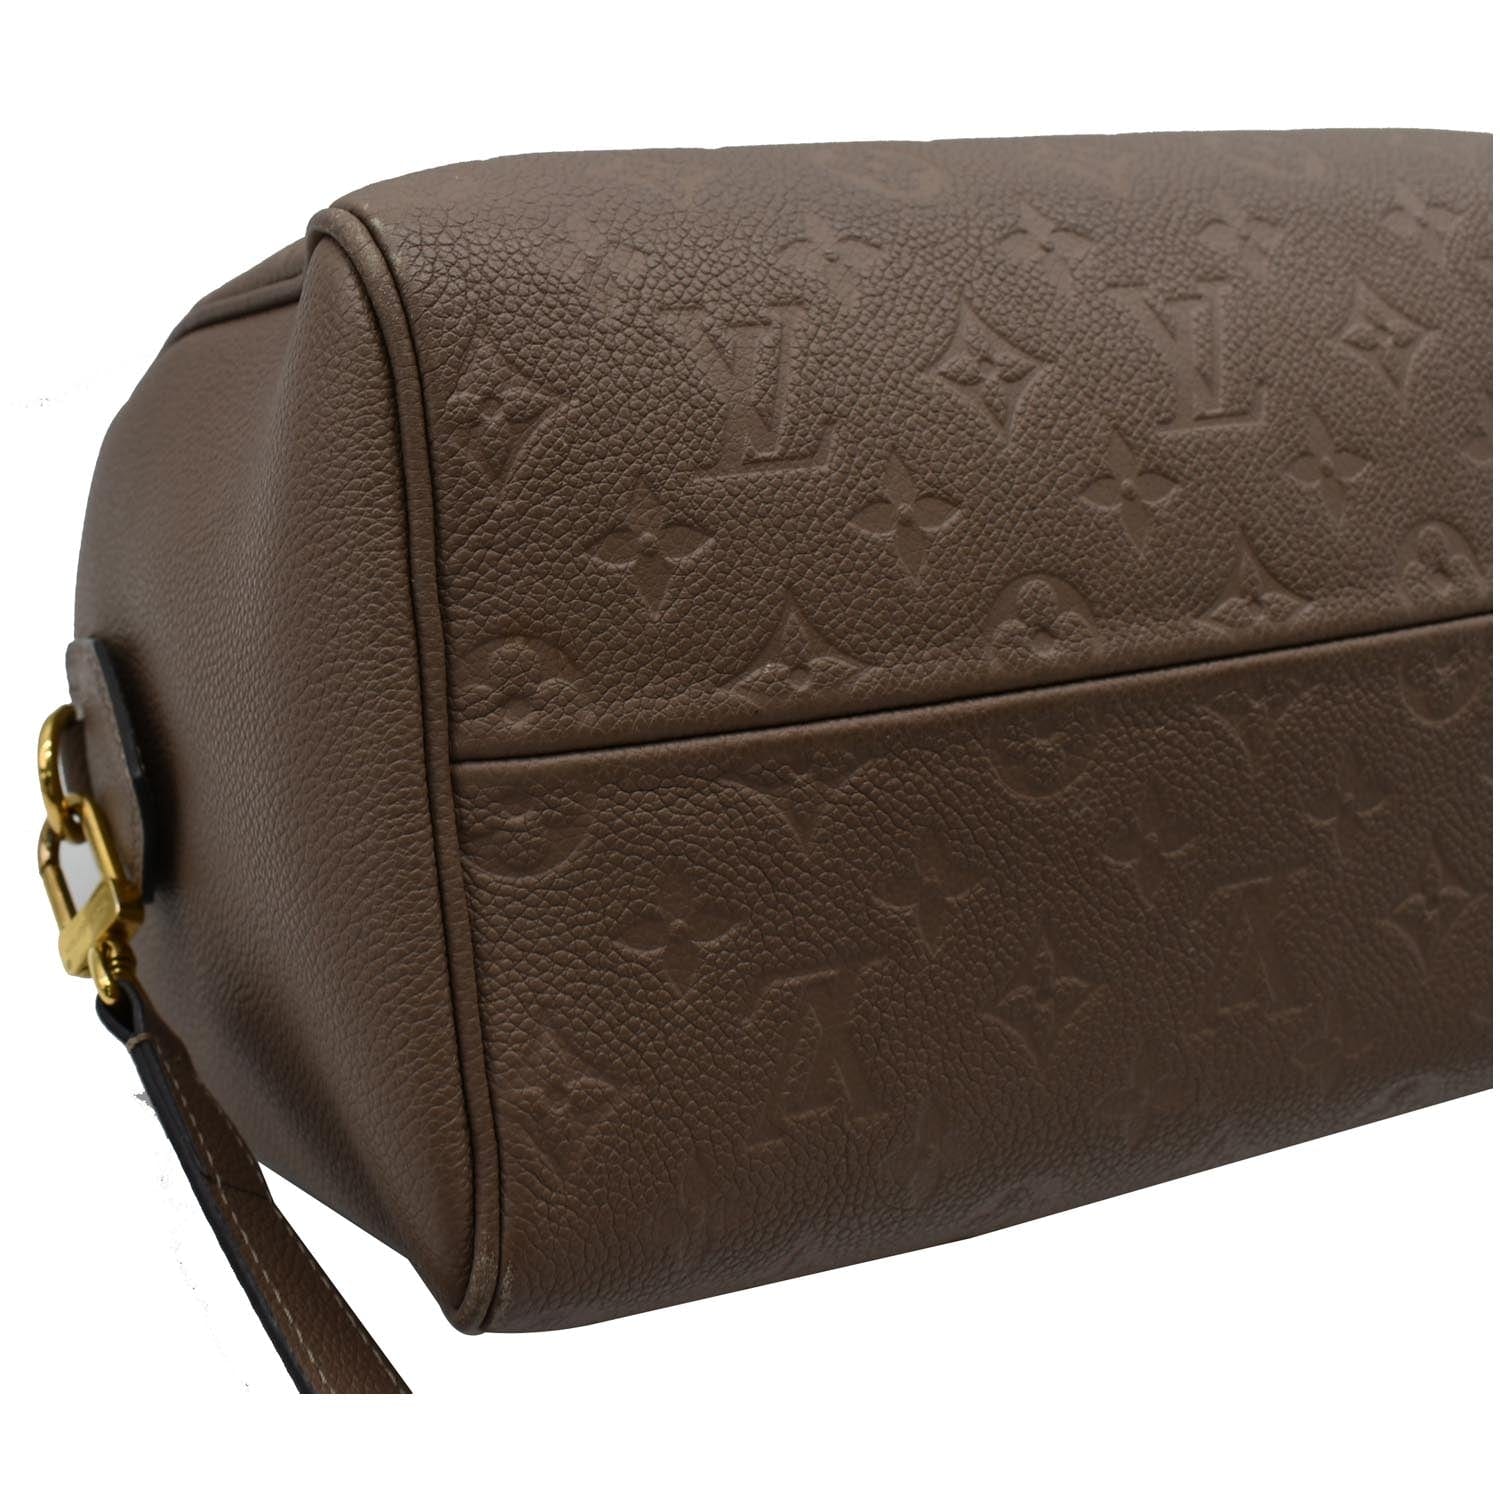 Speedy Bandoulière 25 Top handle bag in Monogram Empreinte leather